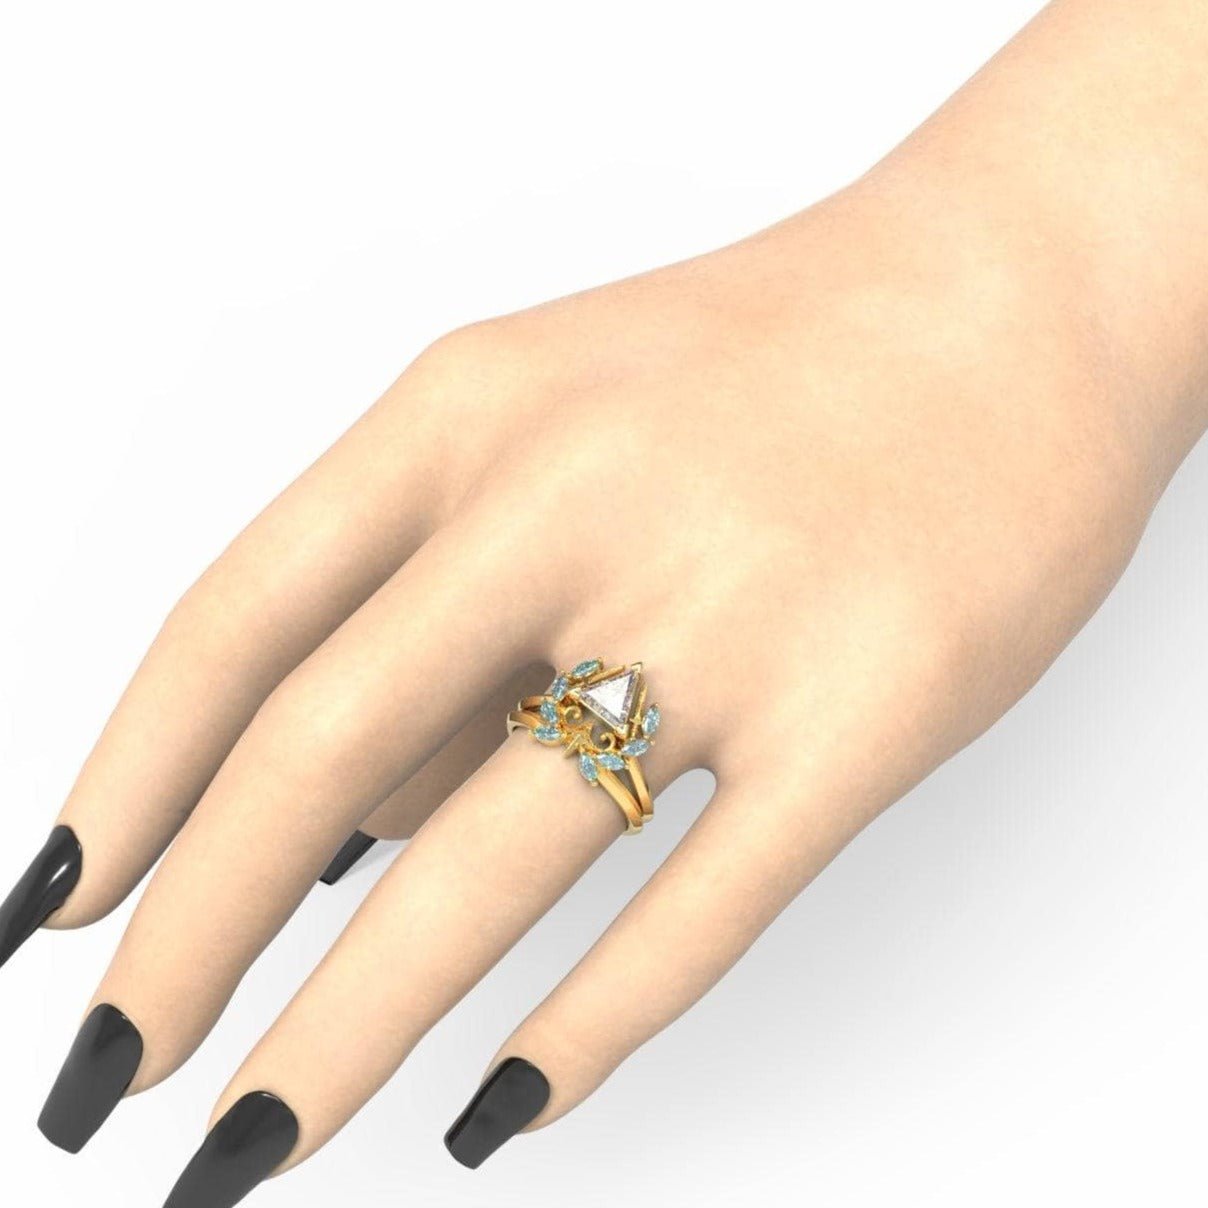 Light Mage Ring Set- 14k Rose Gold Video Game Inspired Rings - Black Diamonds New York